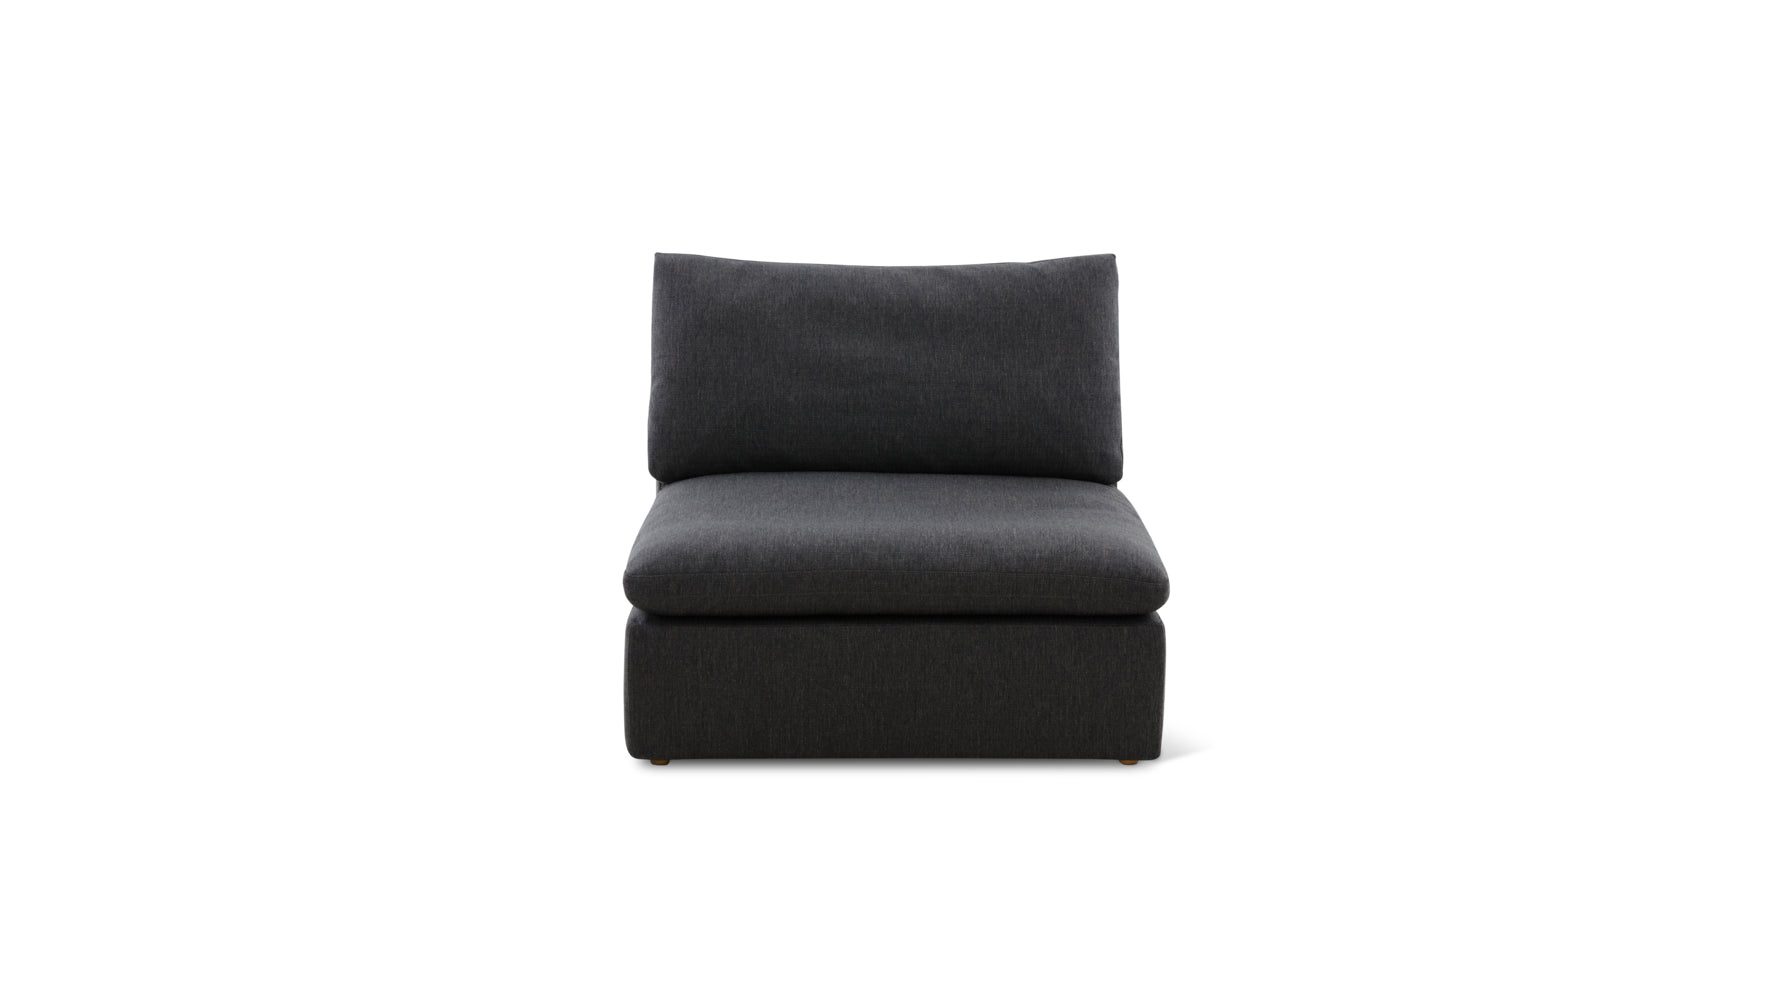 Movie Night™ Armless Chair, Standard, Dark Shadow - Image 1